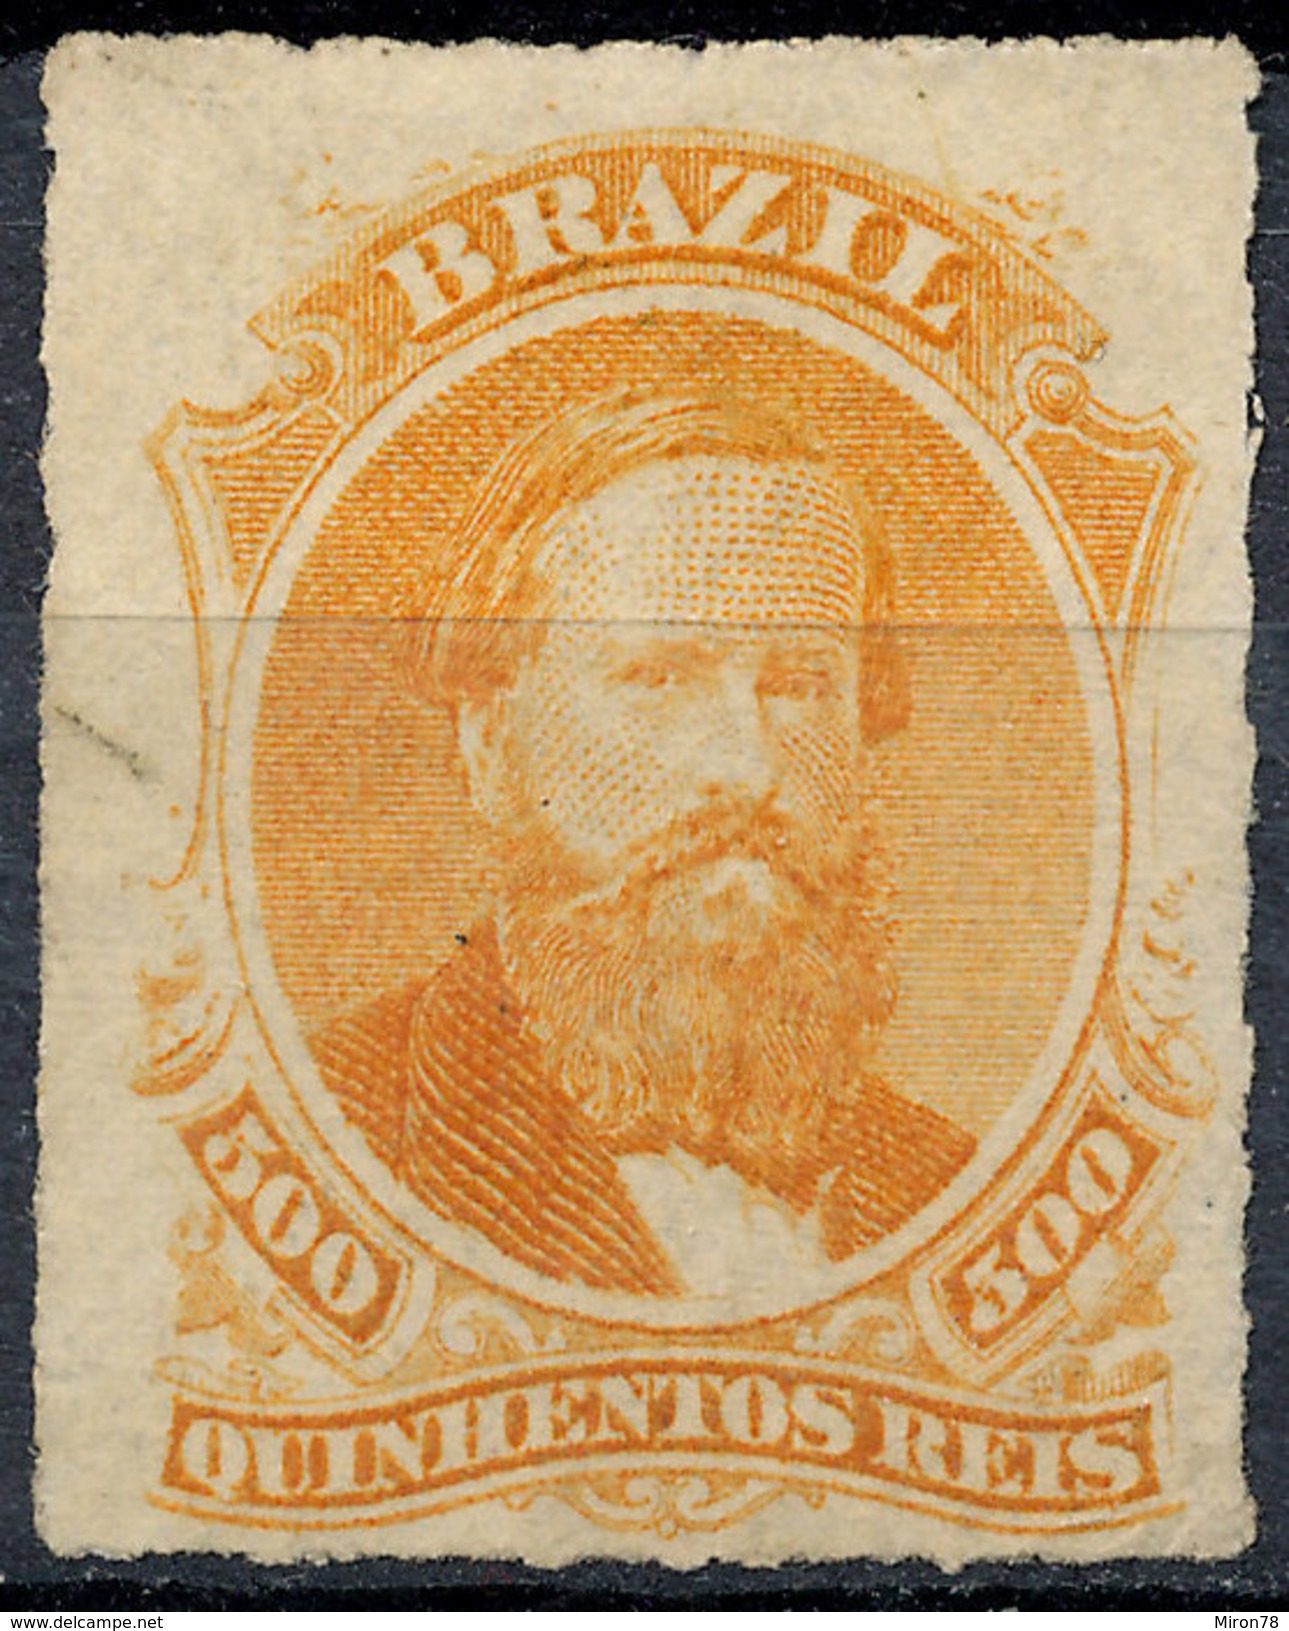 Stamp Brazil 1876  Scott #67 500 Reis Lot#52 - Ongebruikt